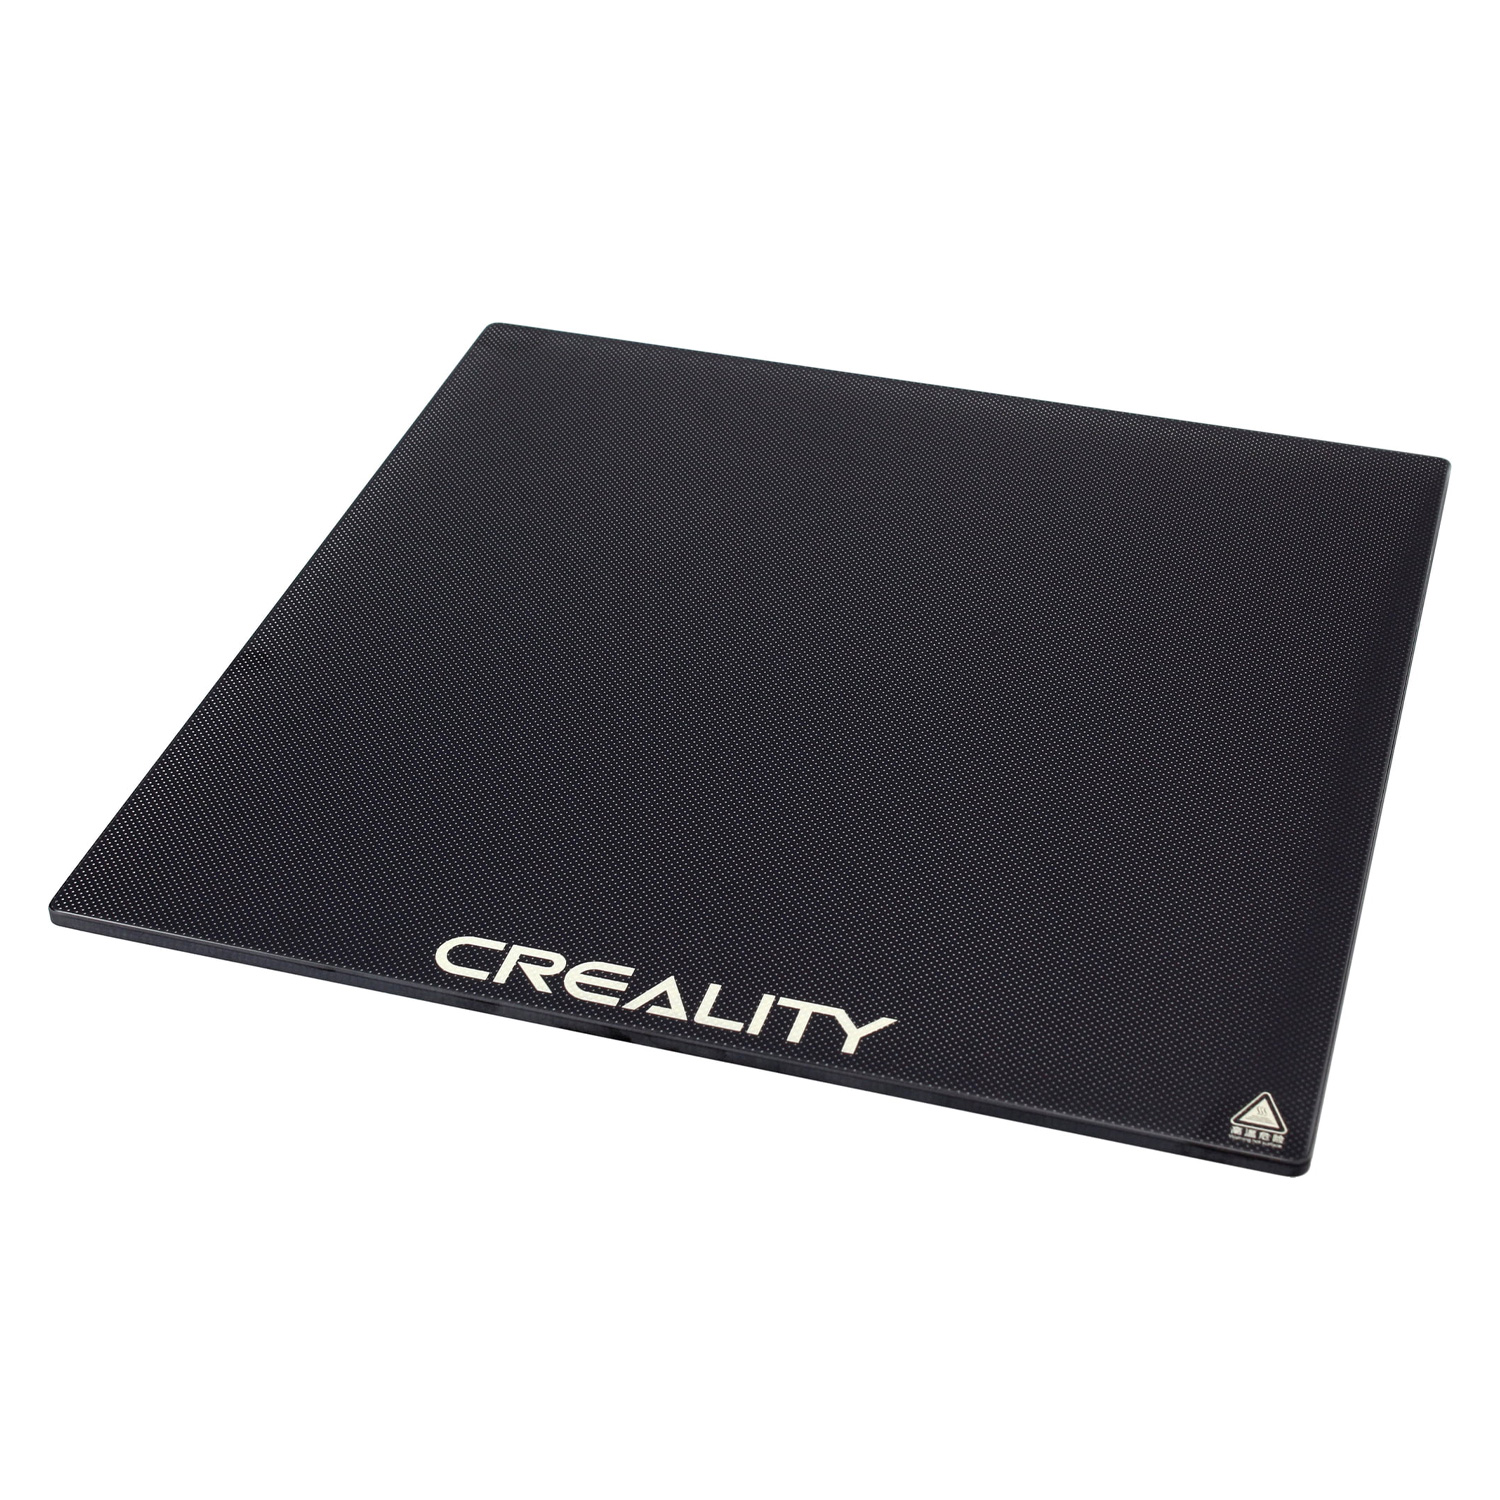 Plataforma de Vidro Creality Carborundum para Impressora 3D CR-10S